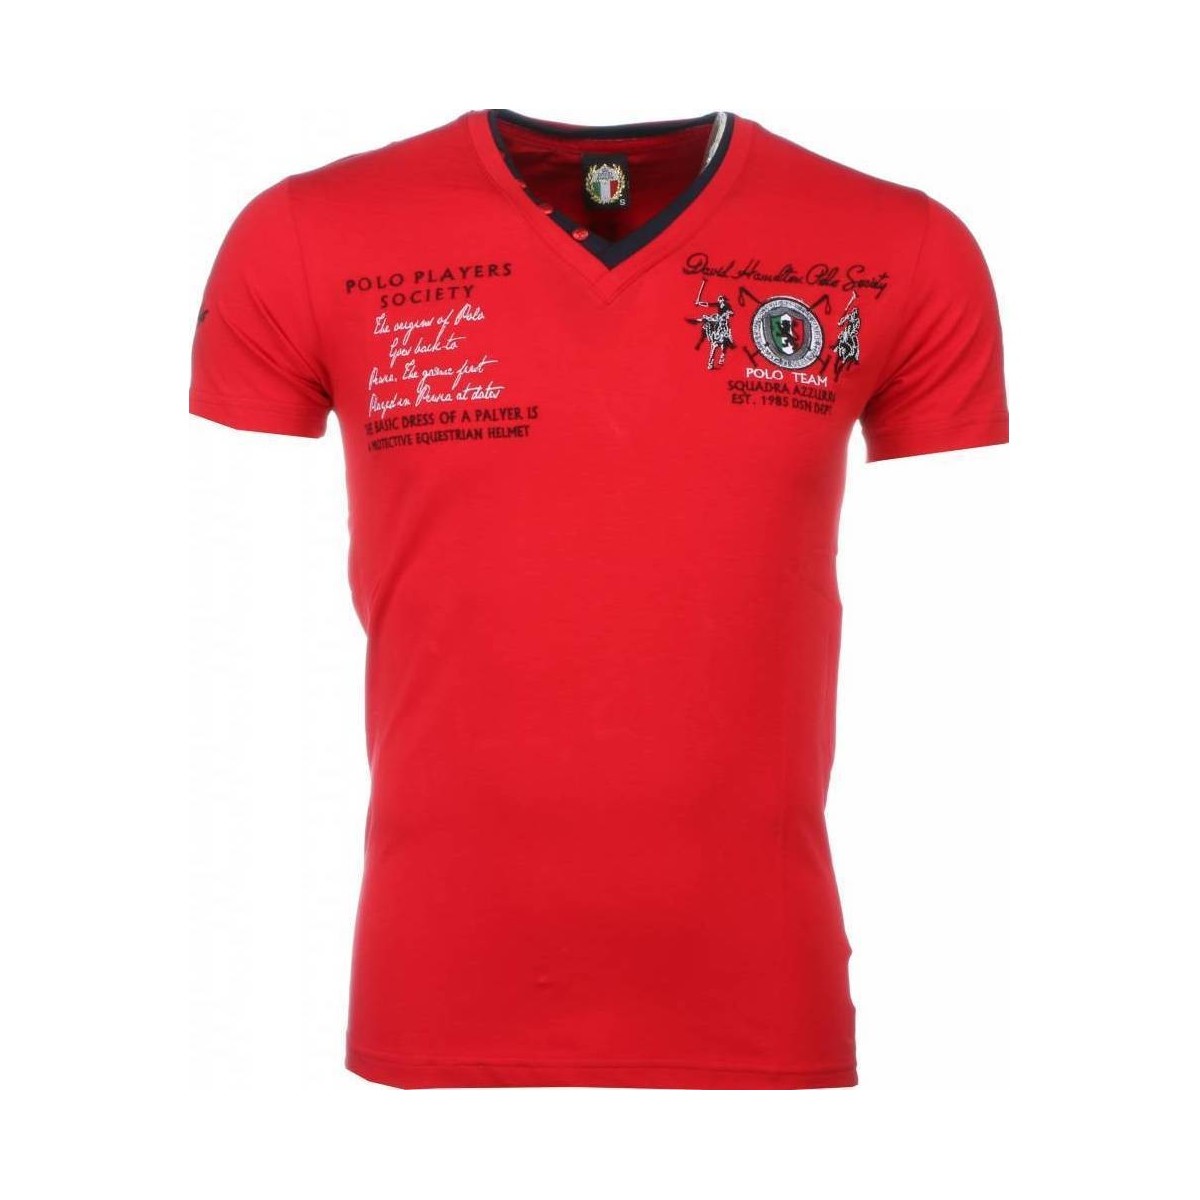 tekstylia Męskie T-shirty z krótkim rękawem David Copper 6694338 Czerwony